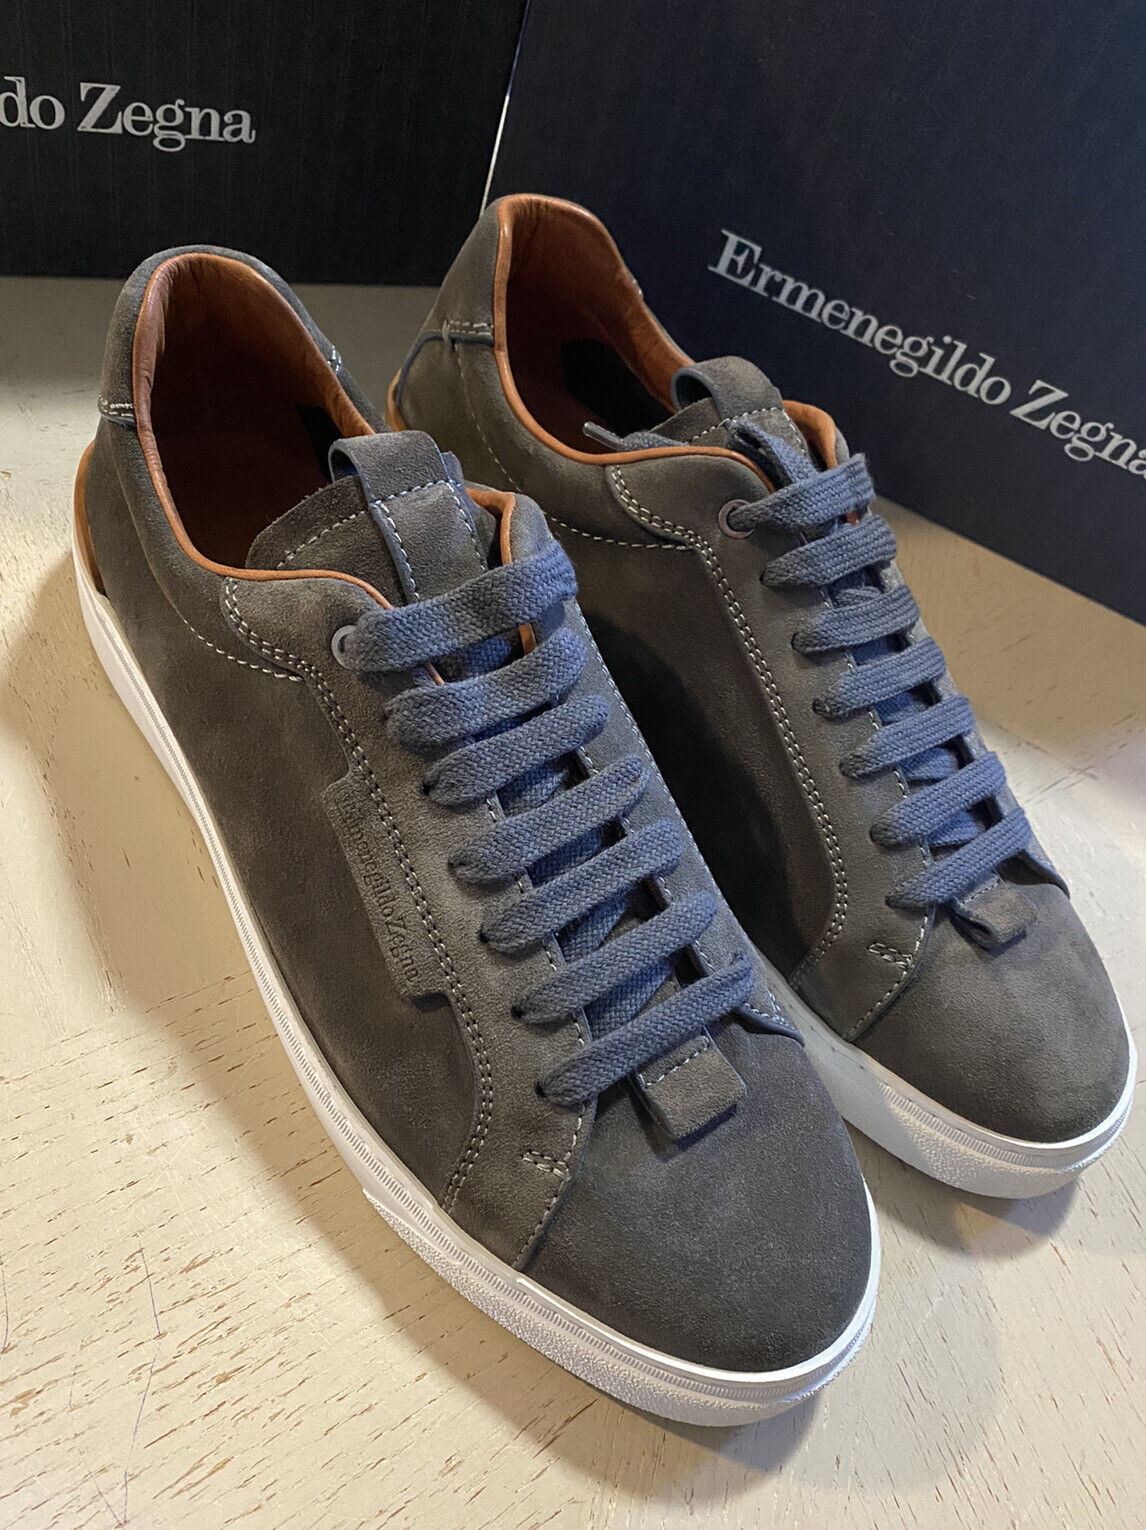 Neue 495 $ Ermenegildo Zegna Wildleder-Sneakers Schuhe DK Grau 10,5 US Italien